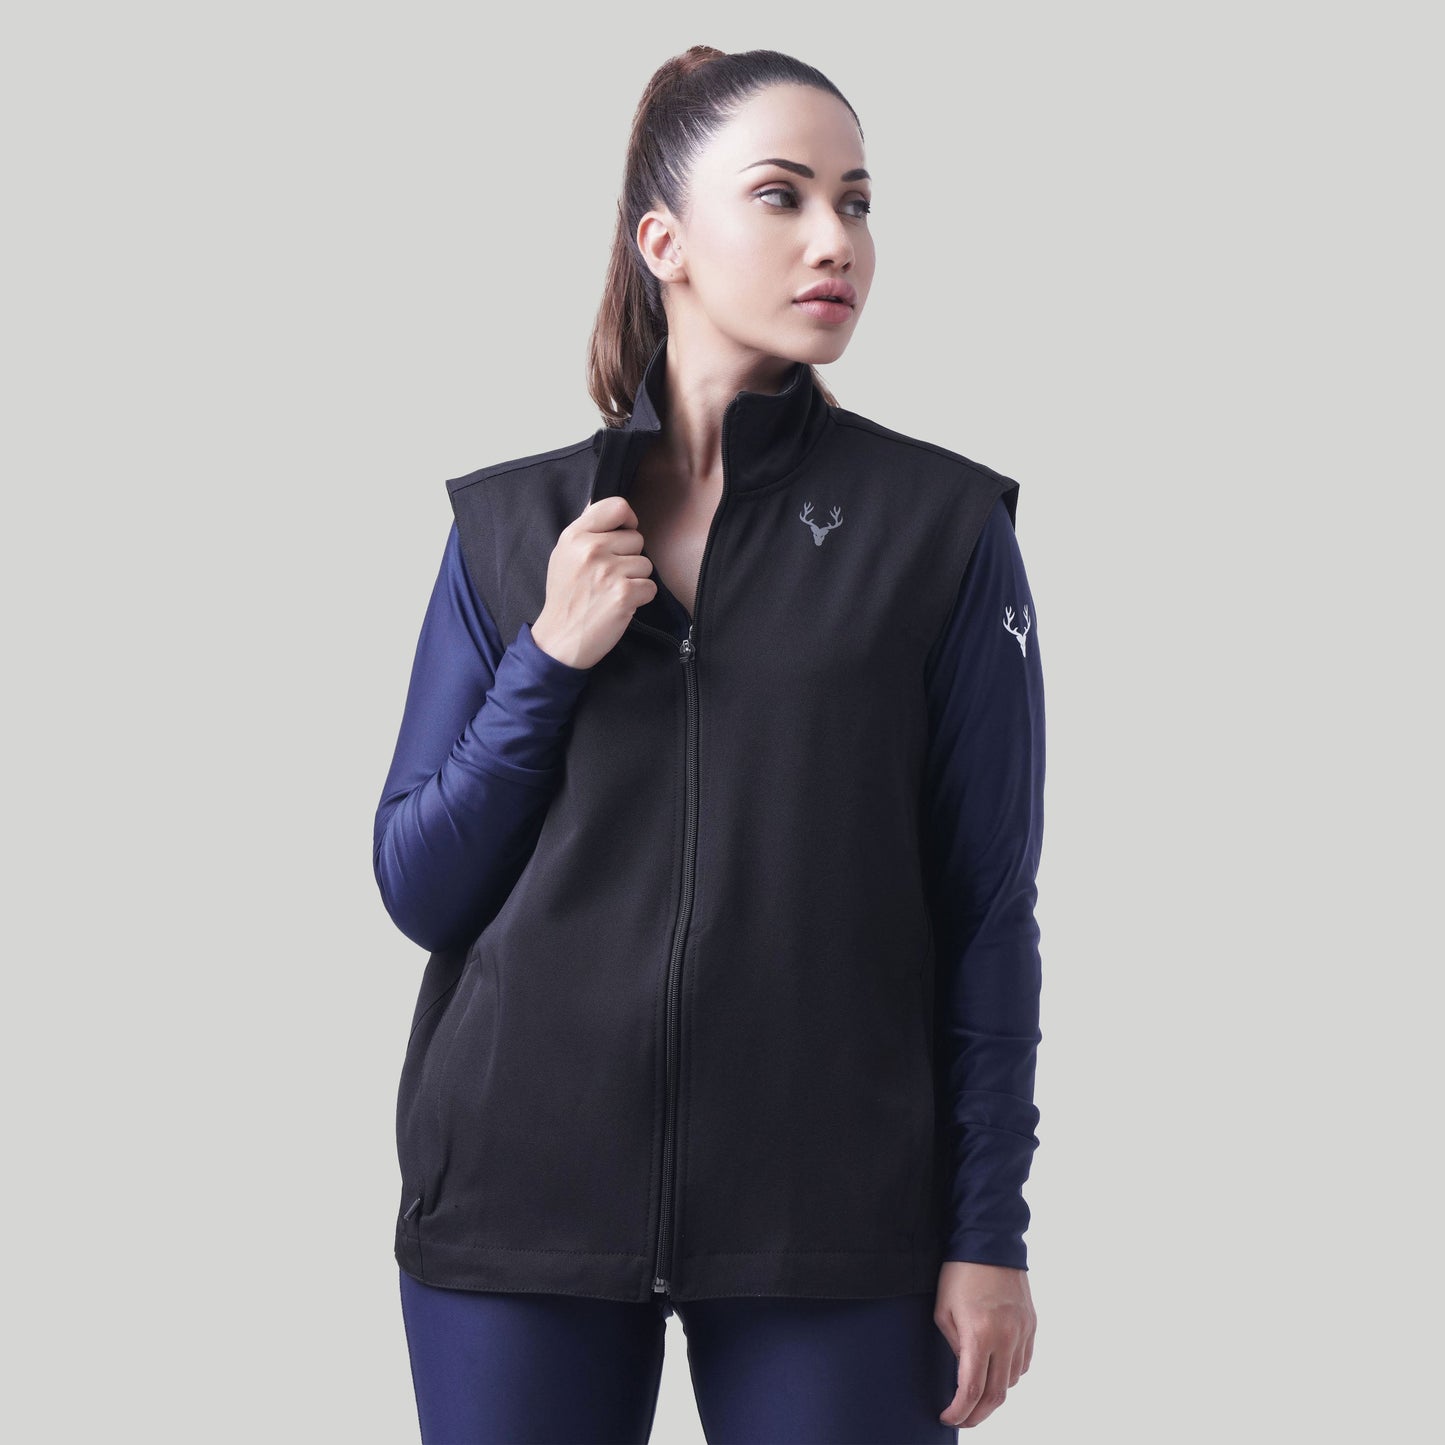 Stag Unisex Sports Sleeveless Jacket (Black)